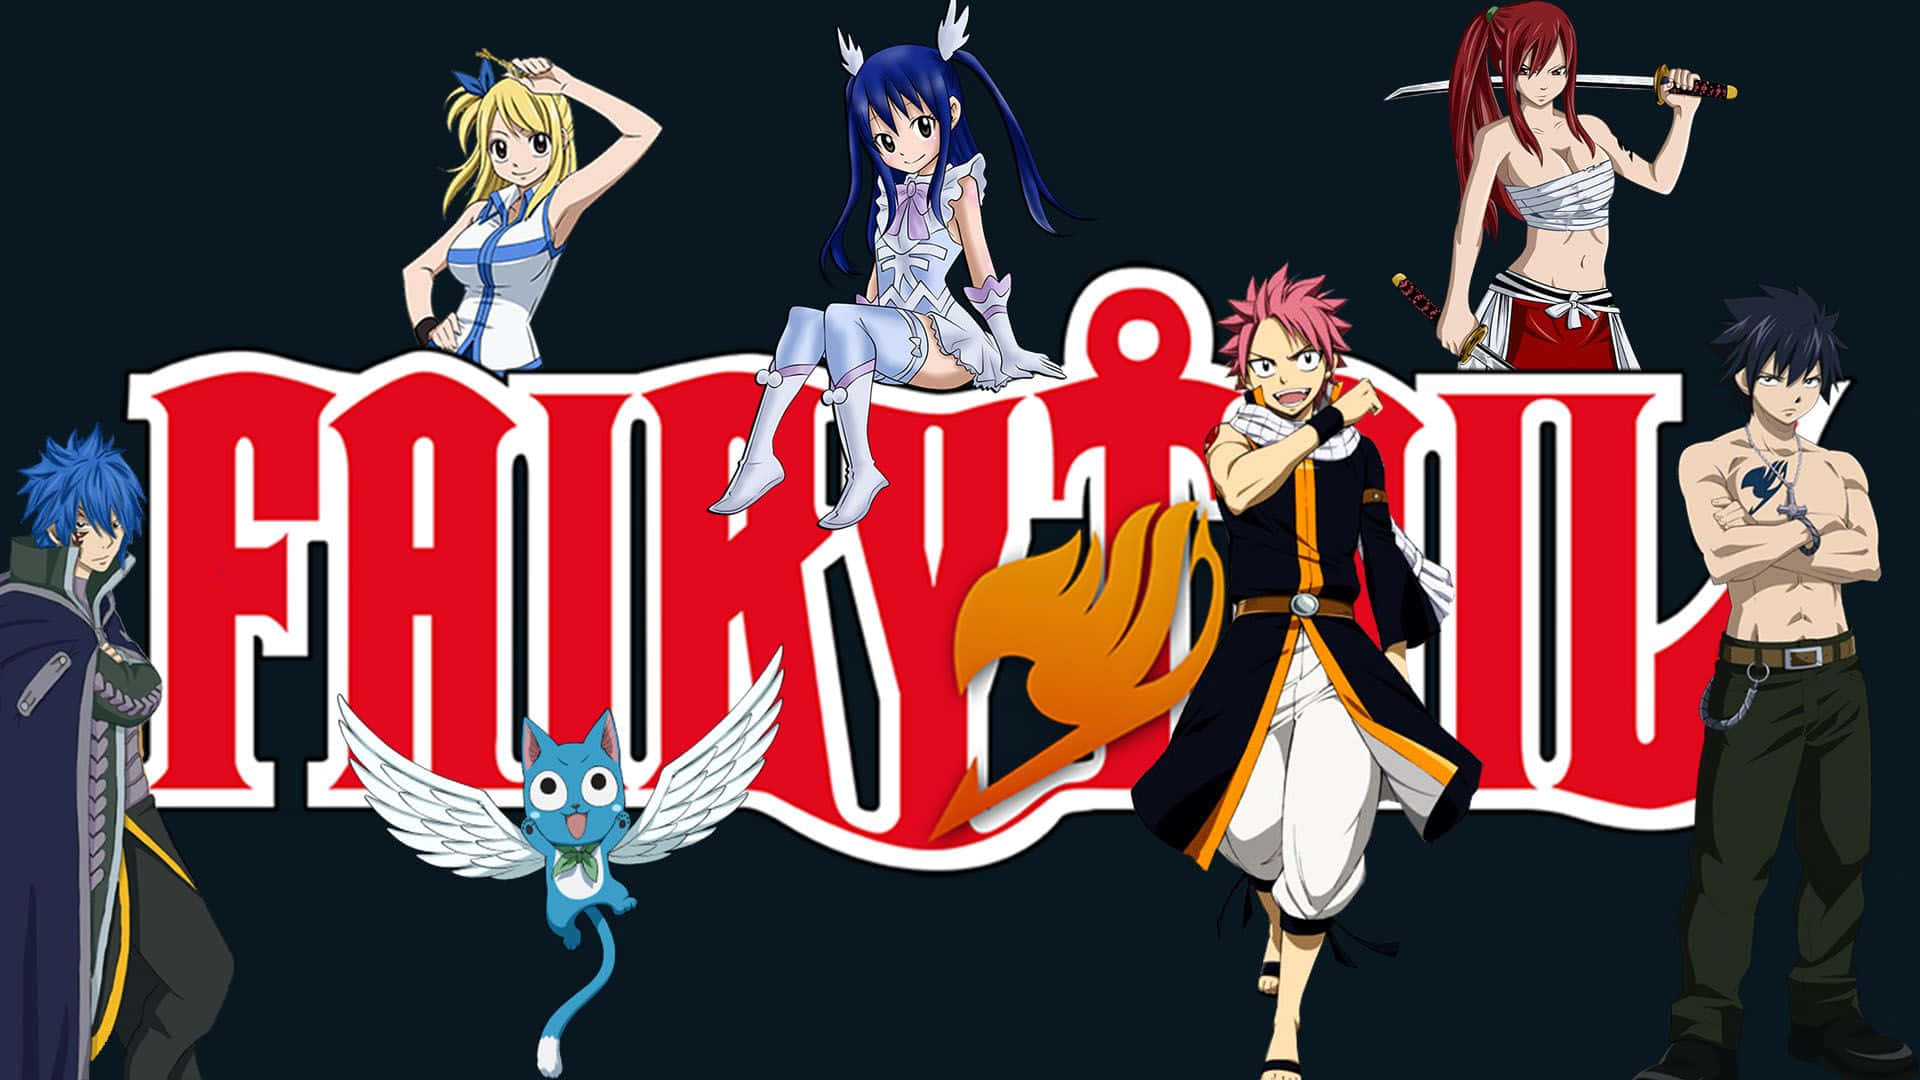 Eineaufregende Kampfszene Aus Dem Anime Fairy Tail.